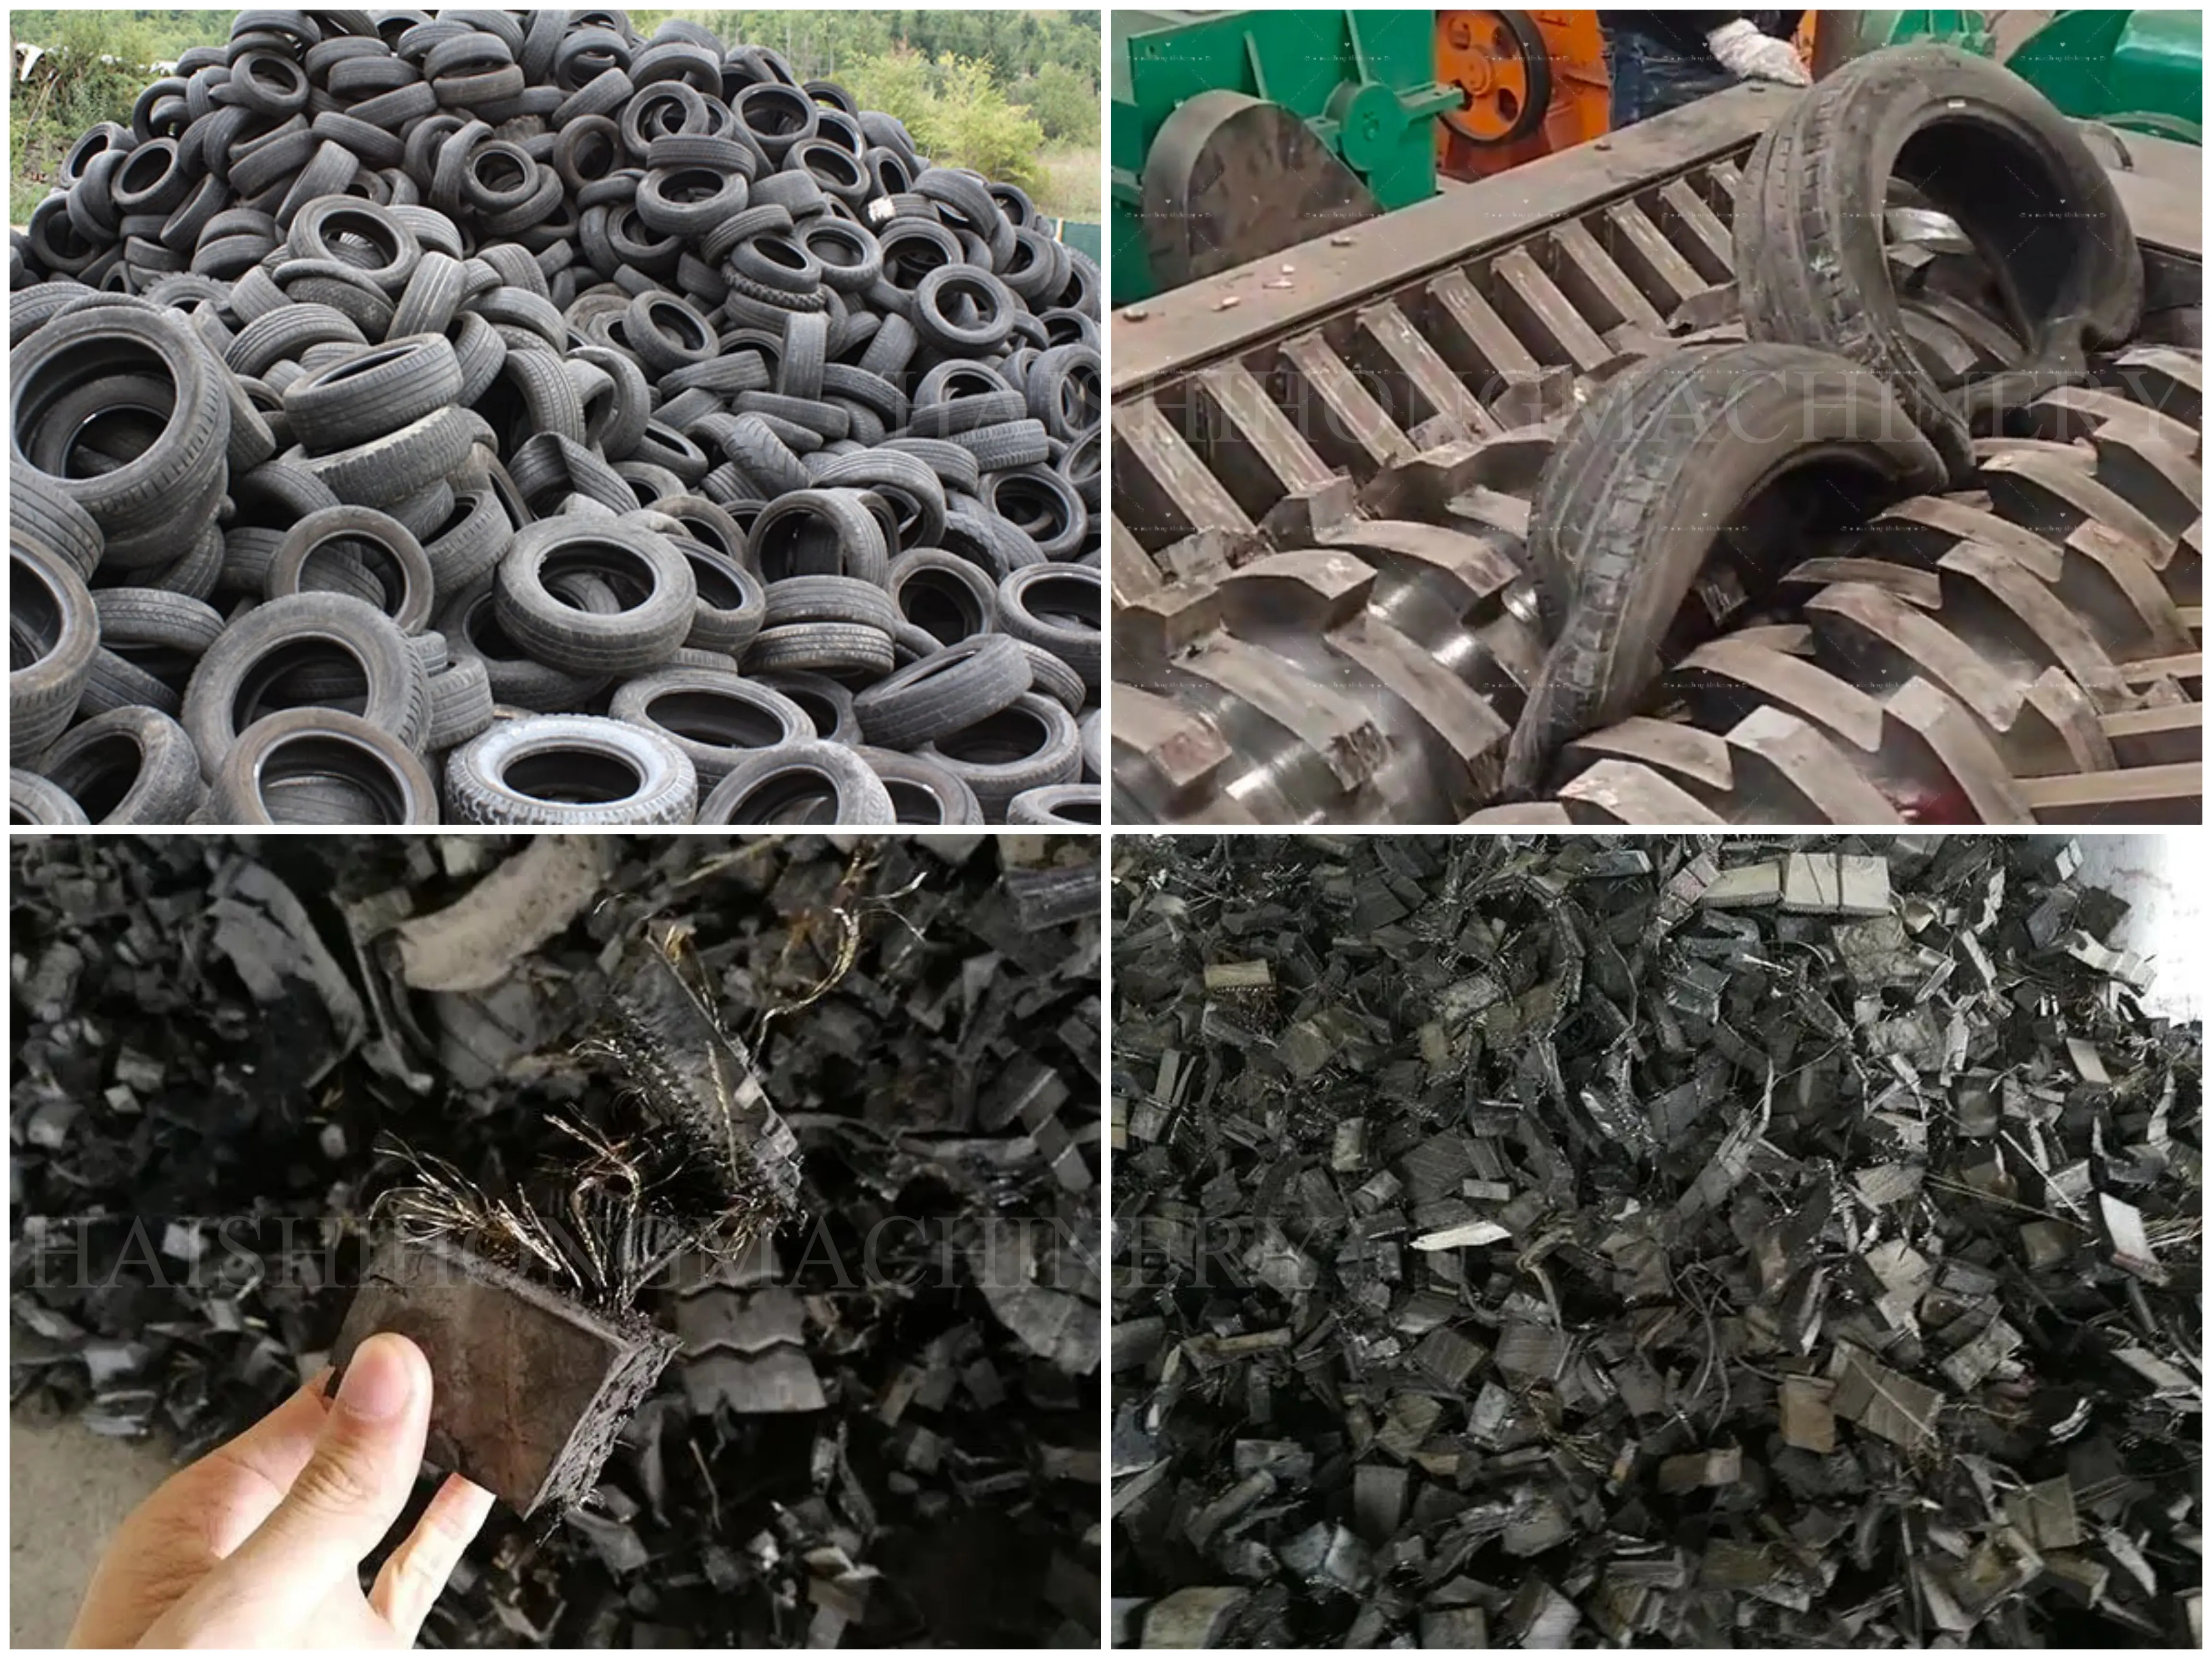 Trituradoras de neumáticos de desecho, equipo de reciclaje de neumáticos, máquina trituradora de neumáticos usada